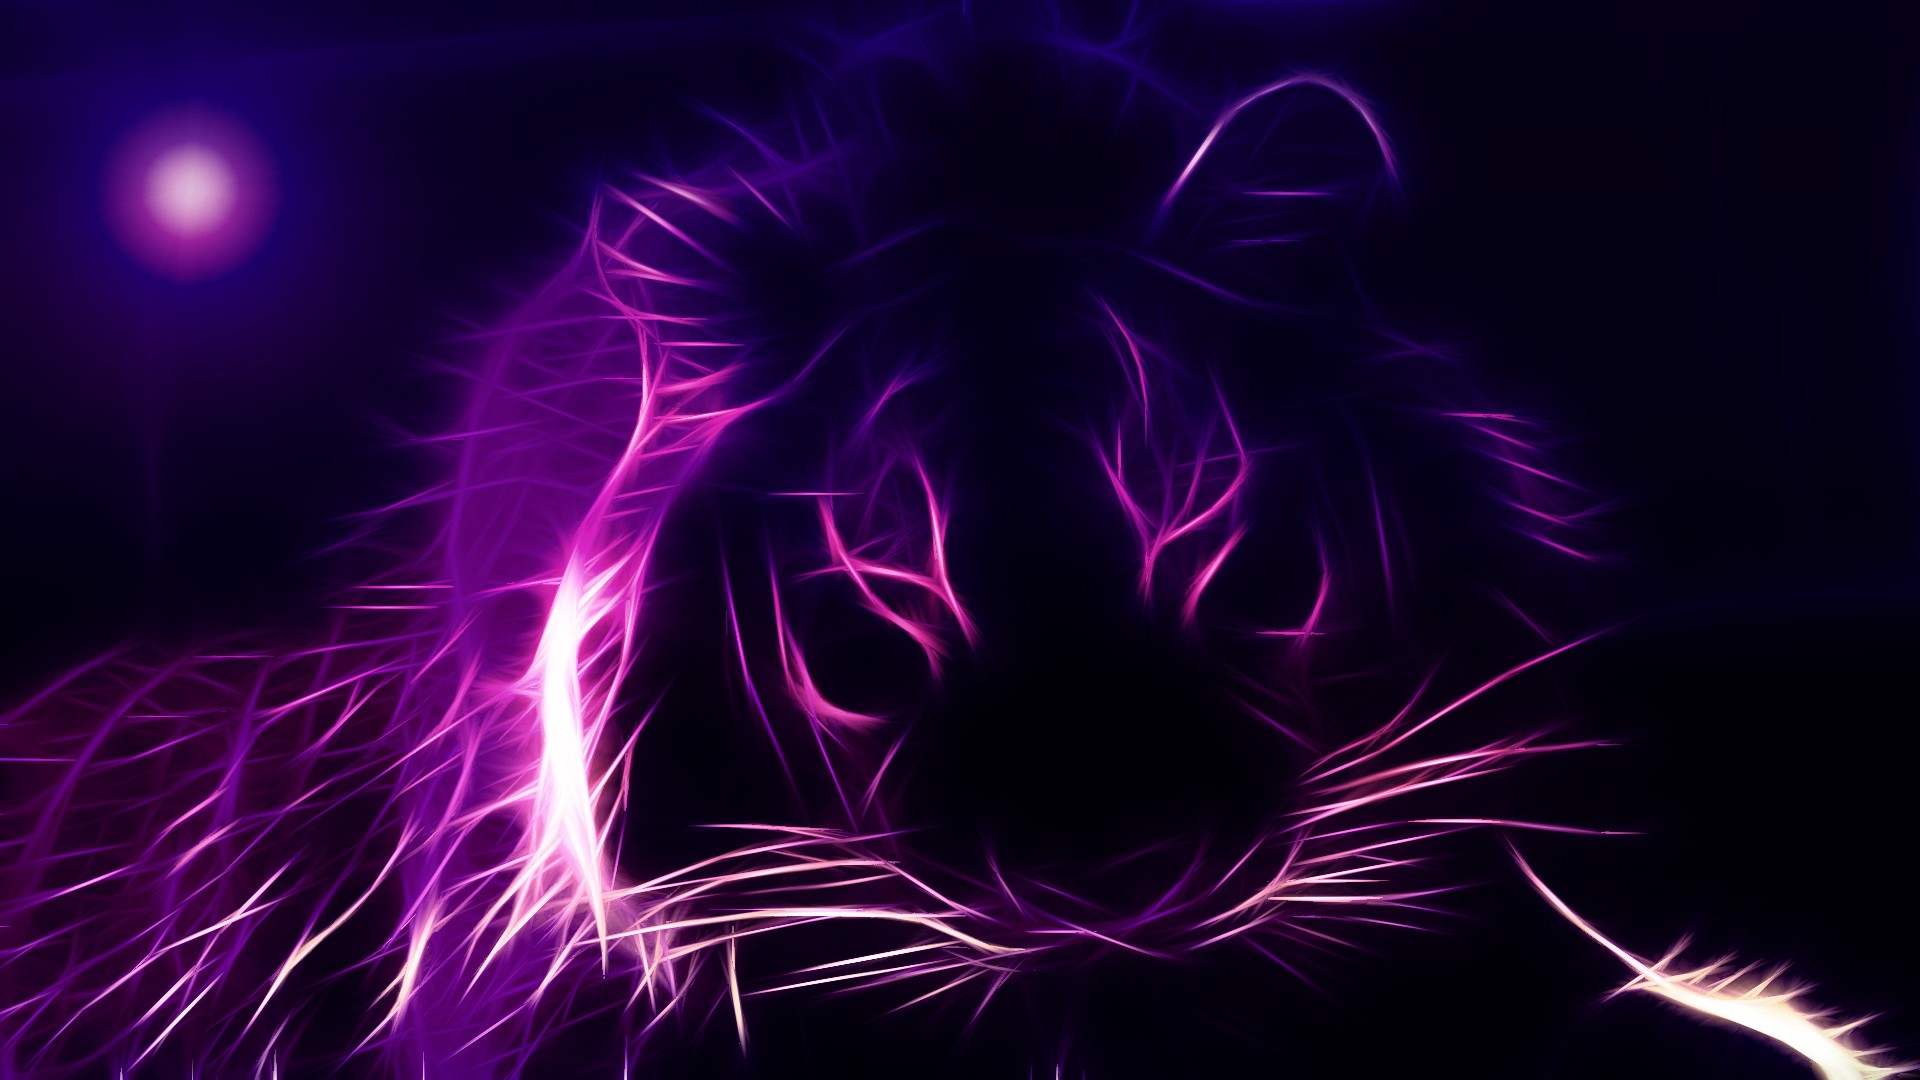 39 imágenes de fondo púrpura de alta definición para descarga gratuita